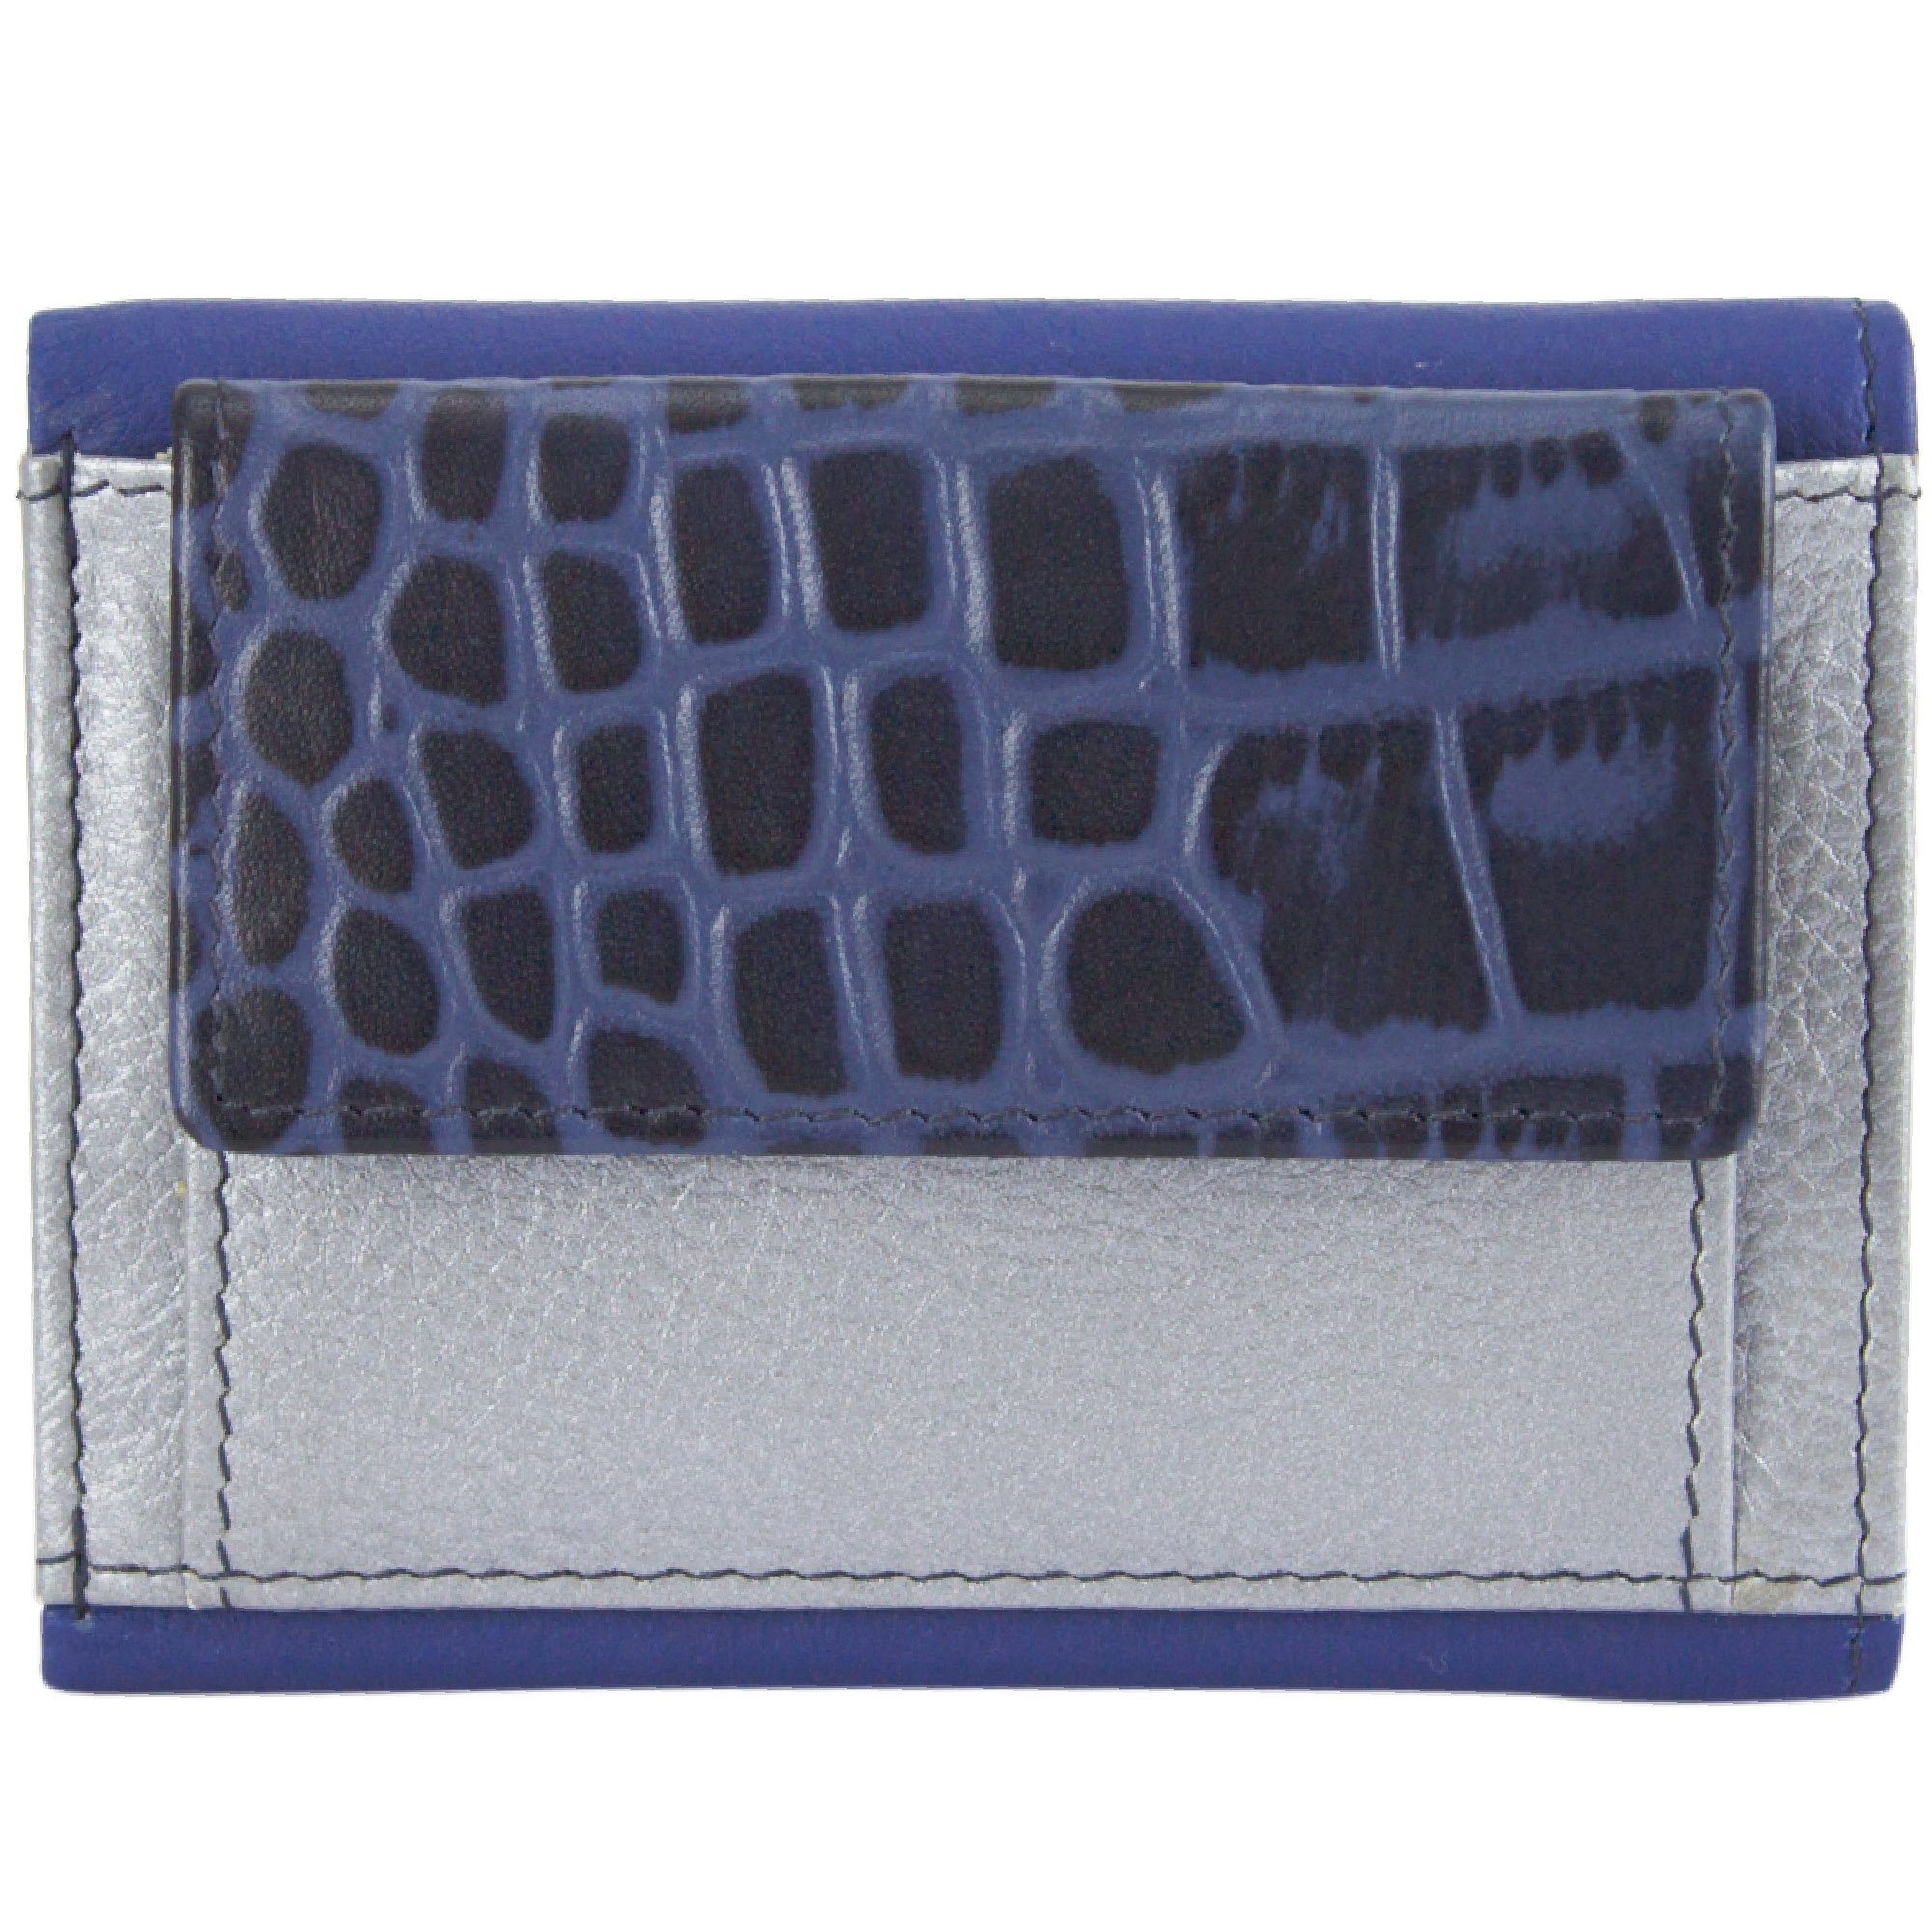 Sunsa Mini Geldbörse Mini klein Leder Geldbörse Geldbeutel Portemonnaie Brieftasche, echt Leder, aus recycelten Lederresten, mit RFID-Schutz, Unisex blau/silber